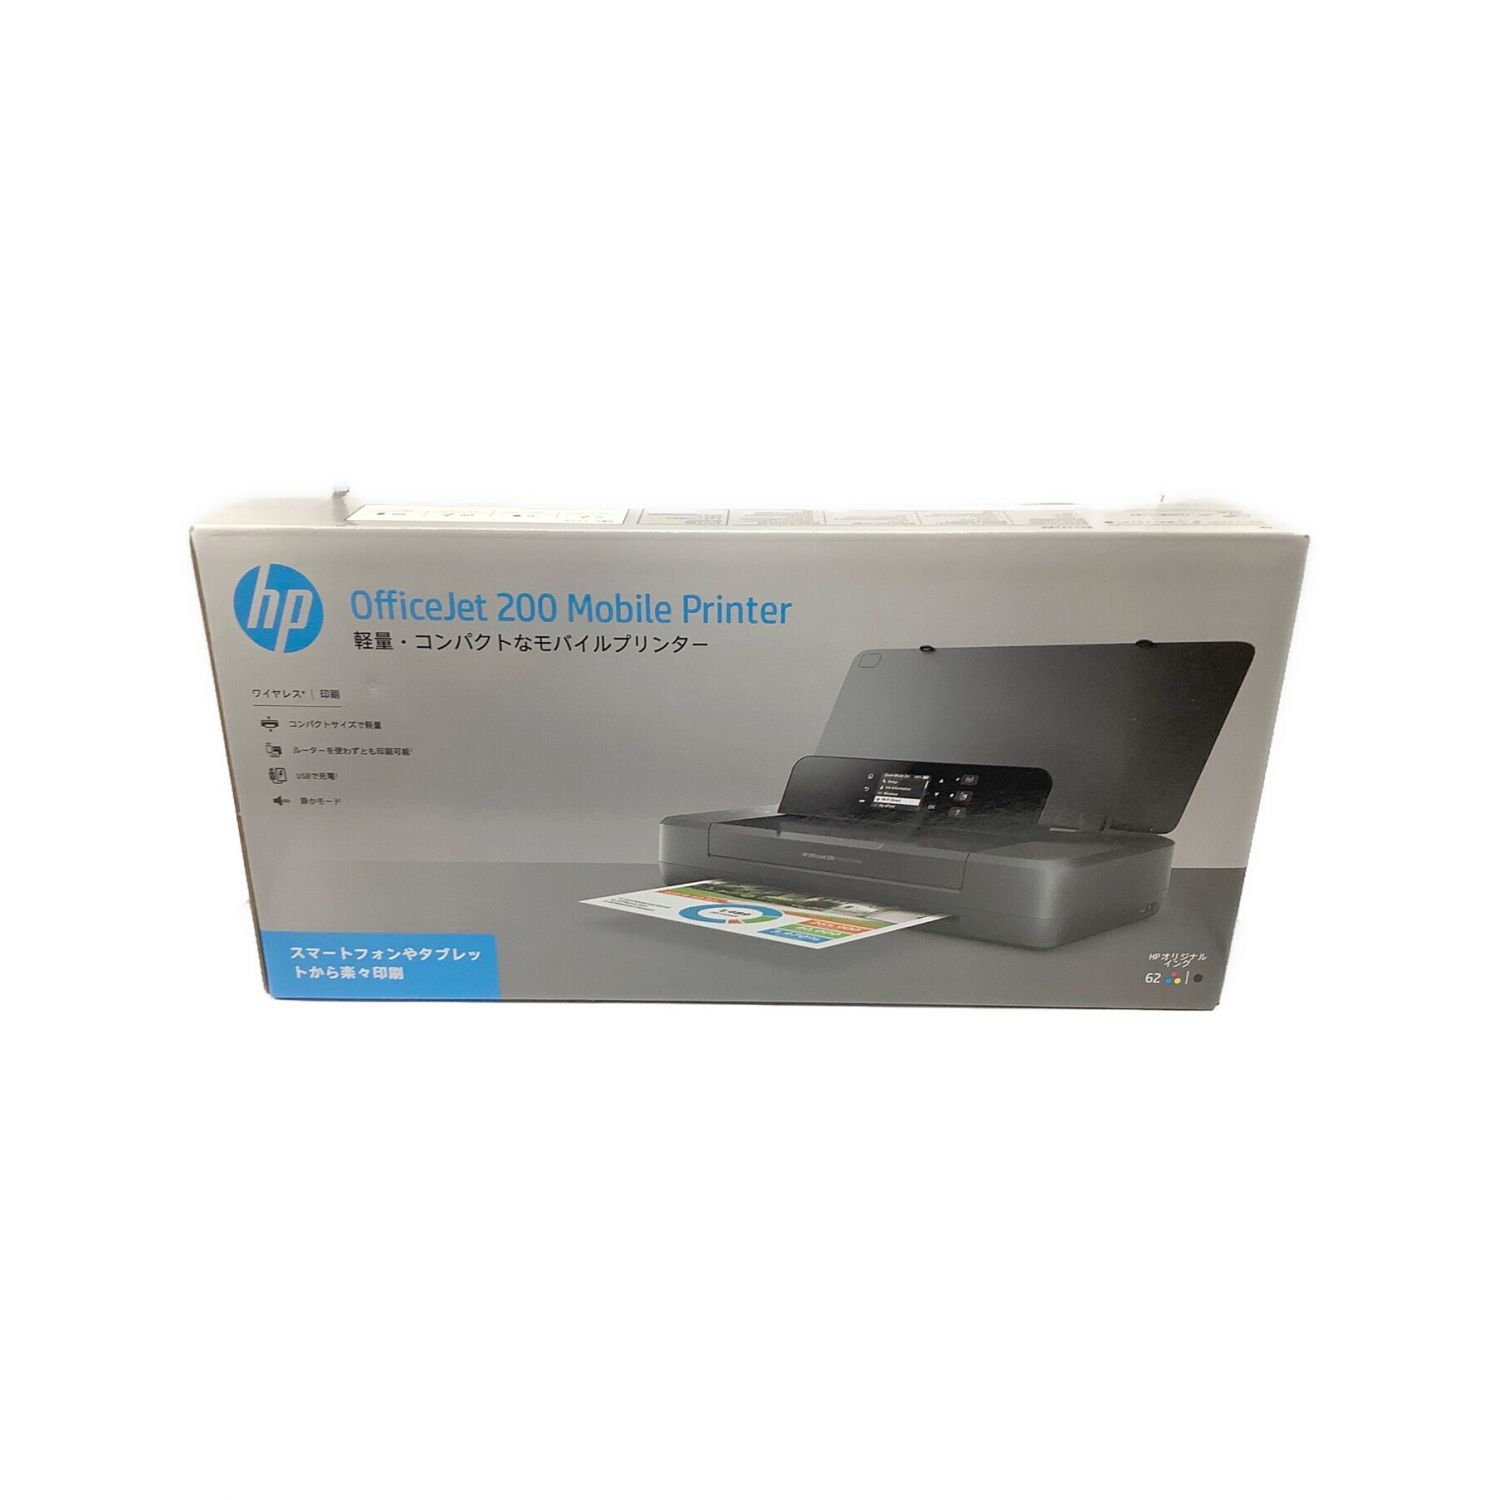 HP モバイル プリンター OfficeJet 200 新品未使用